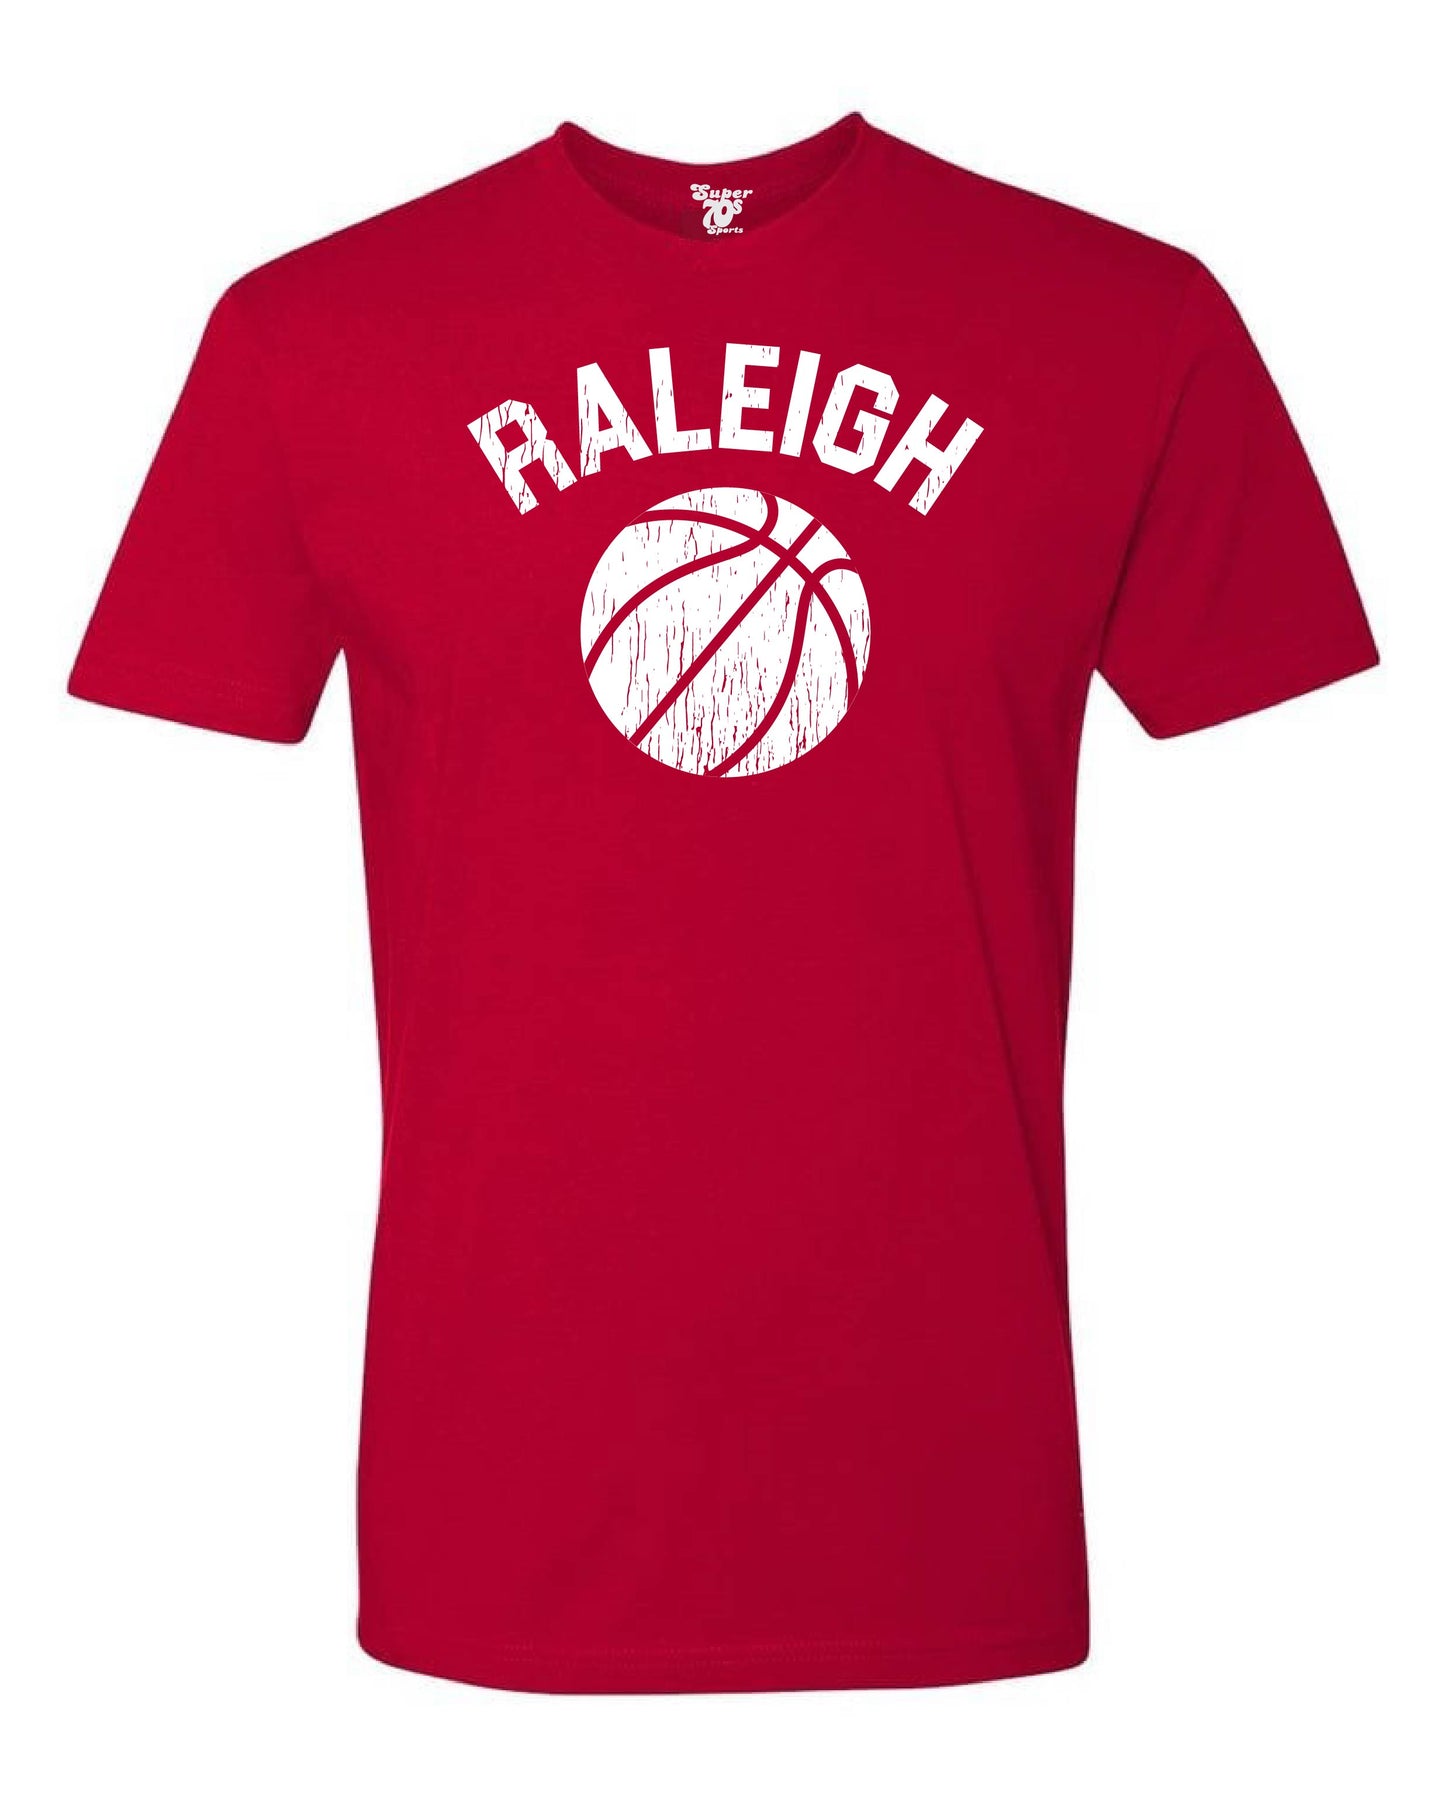 Raleigh Basketball Tee